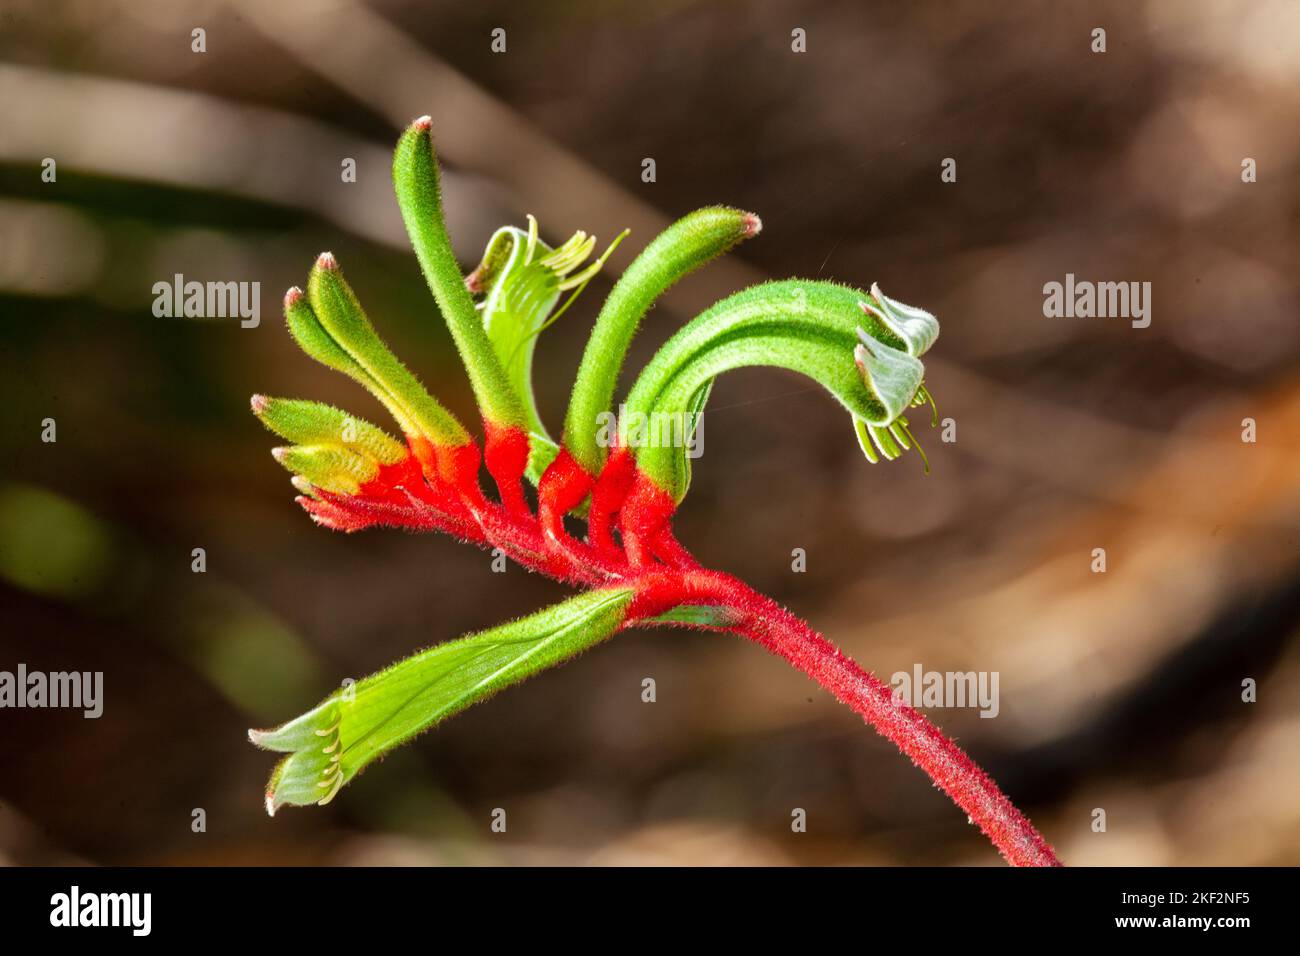 Anigozanthos manglesii, allgemein bekannt als die rot-grüne Kängurupfote, ist eine Pflanzenart, die im Westen der USA endemisch ist Stockfoto